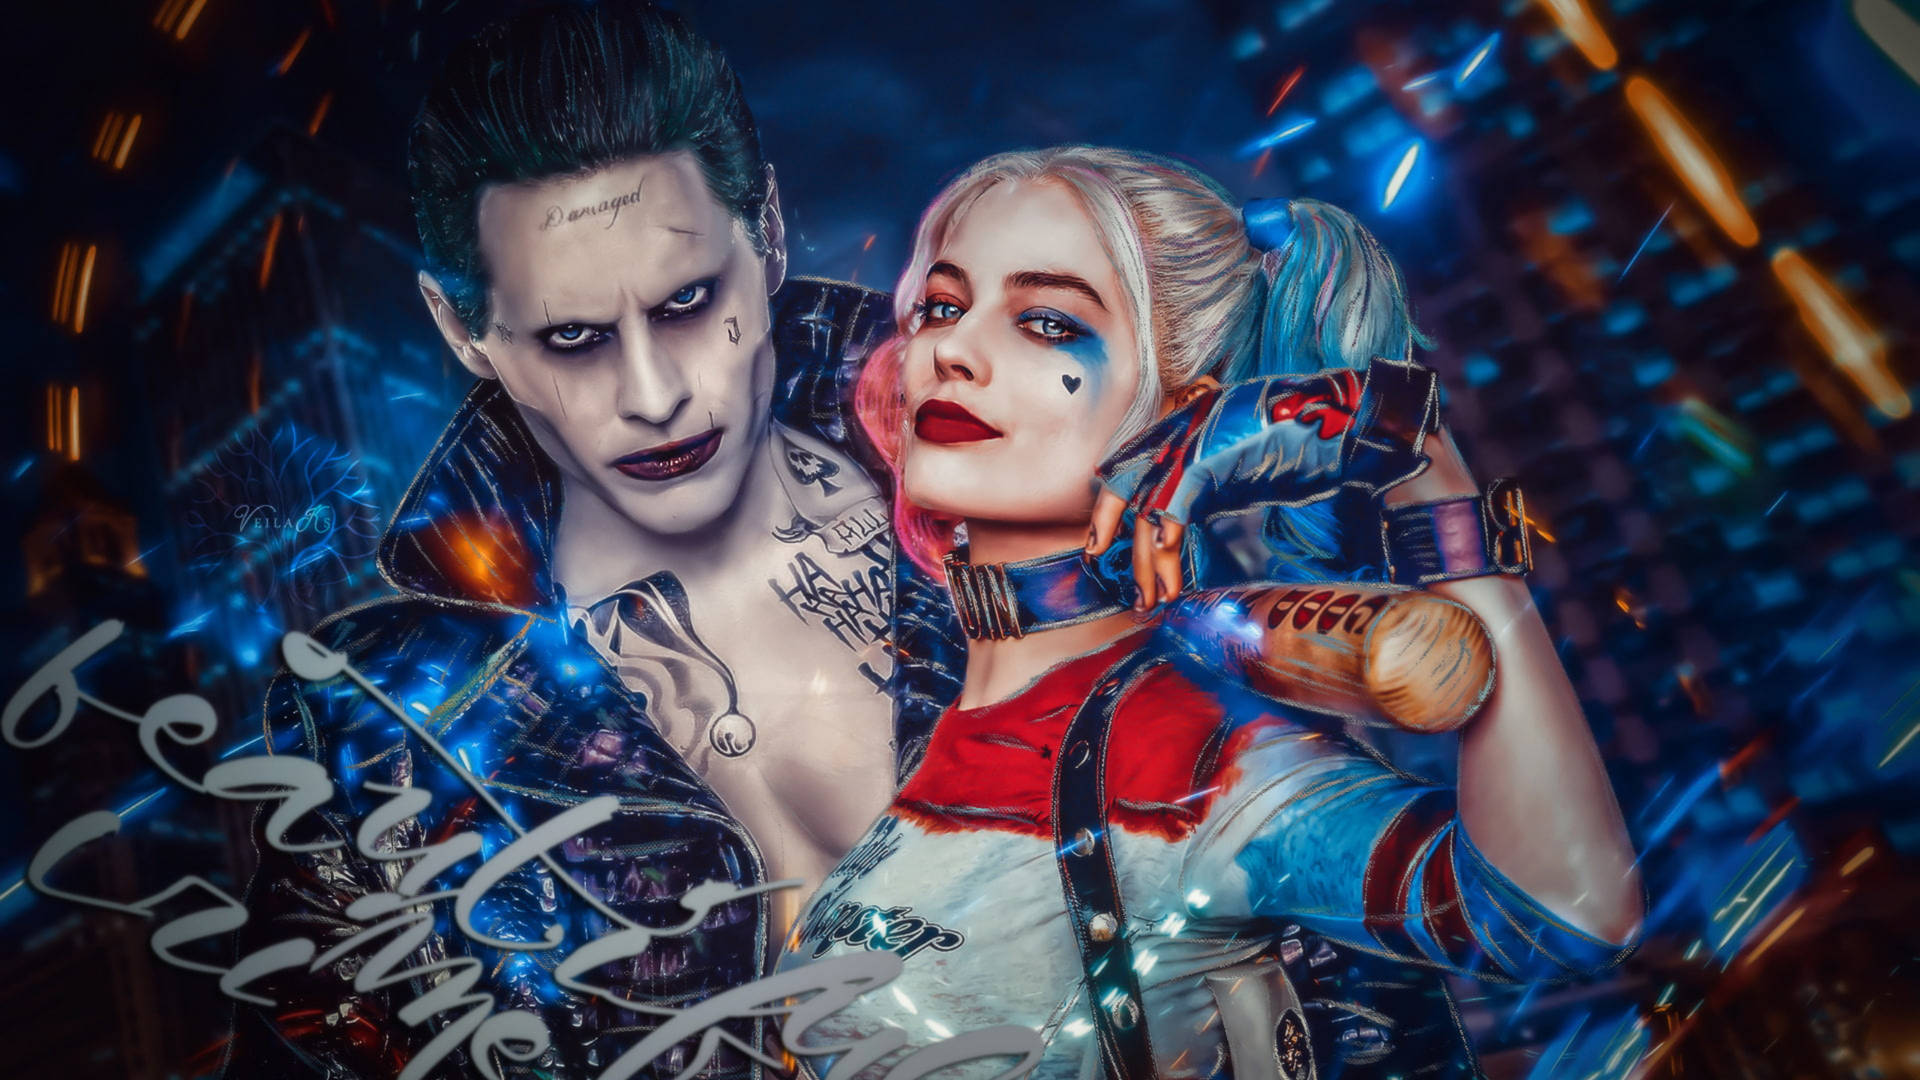 The Joker & Harley Quinn - A Love-Hate Story Wallpaper